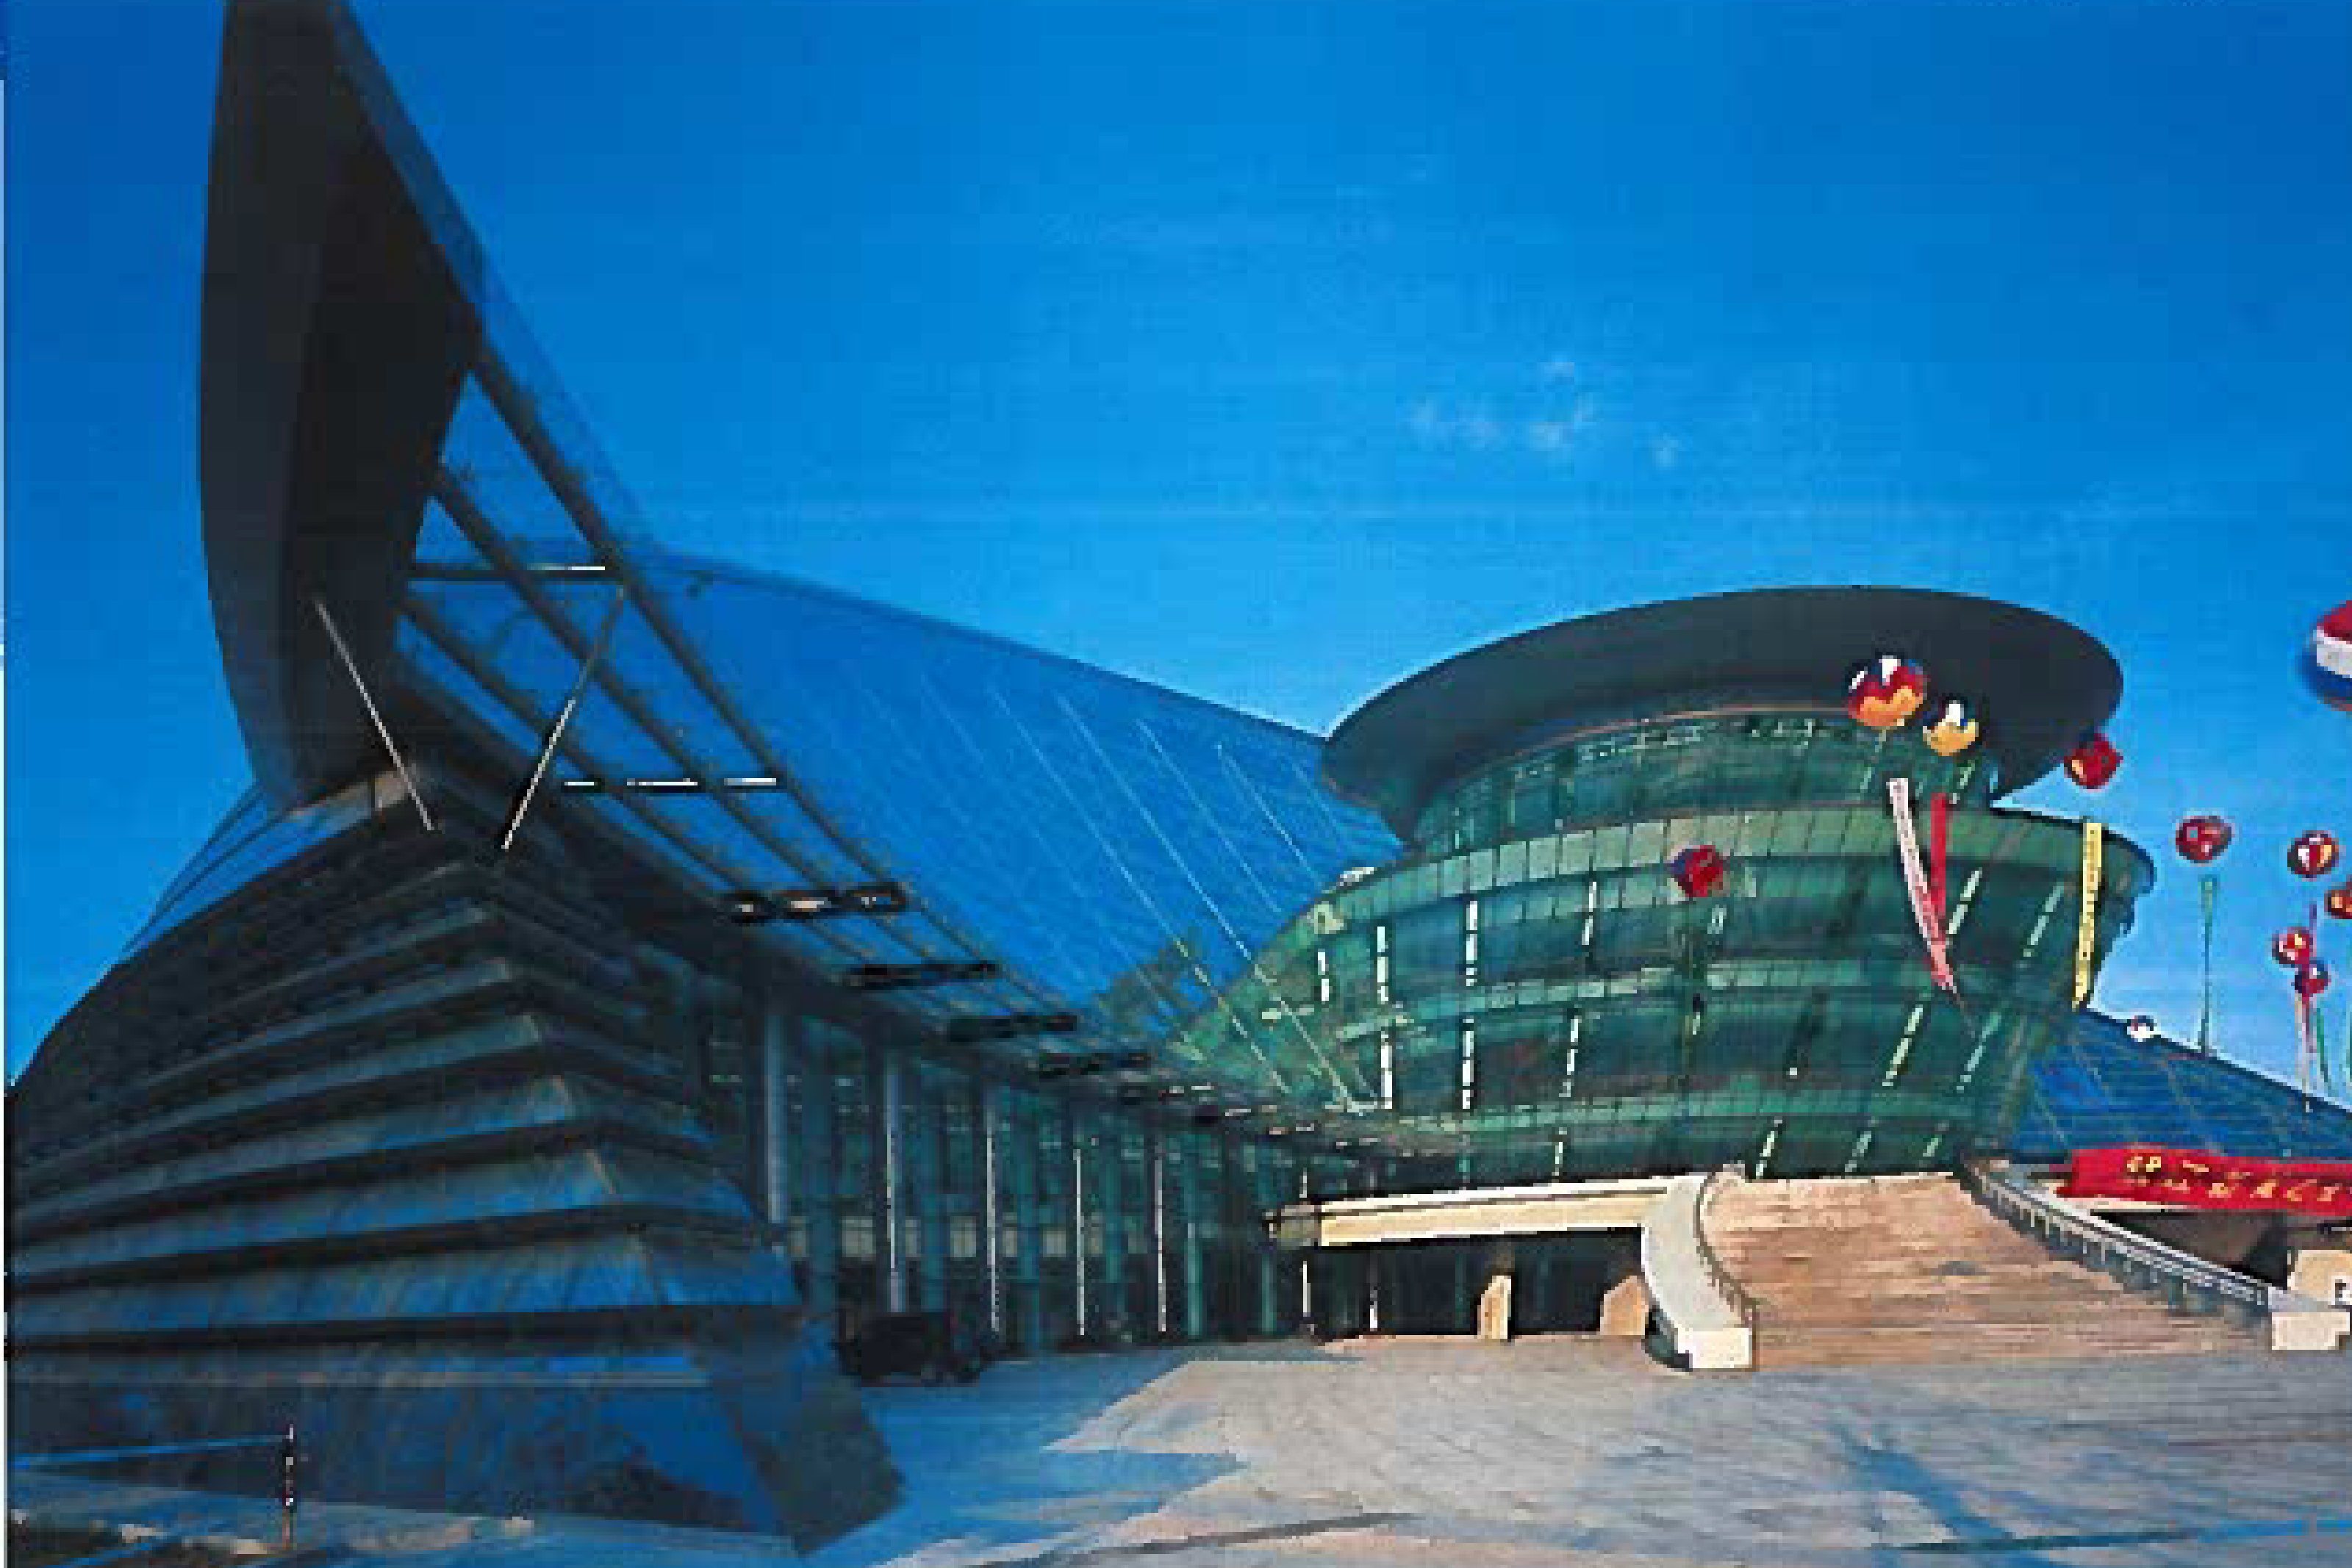 Hangzhou Grand Theatre Exterior